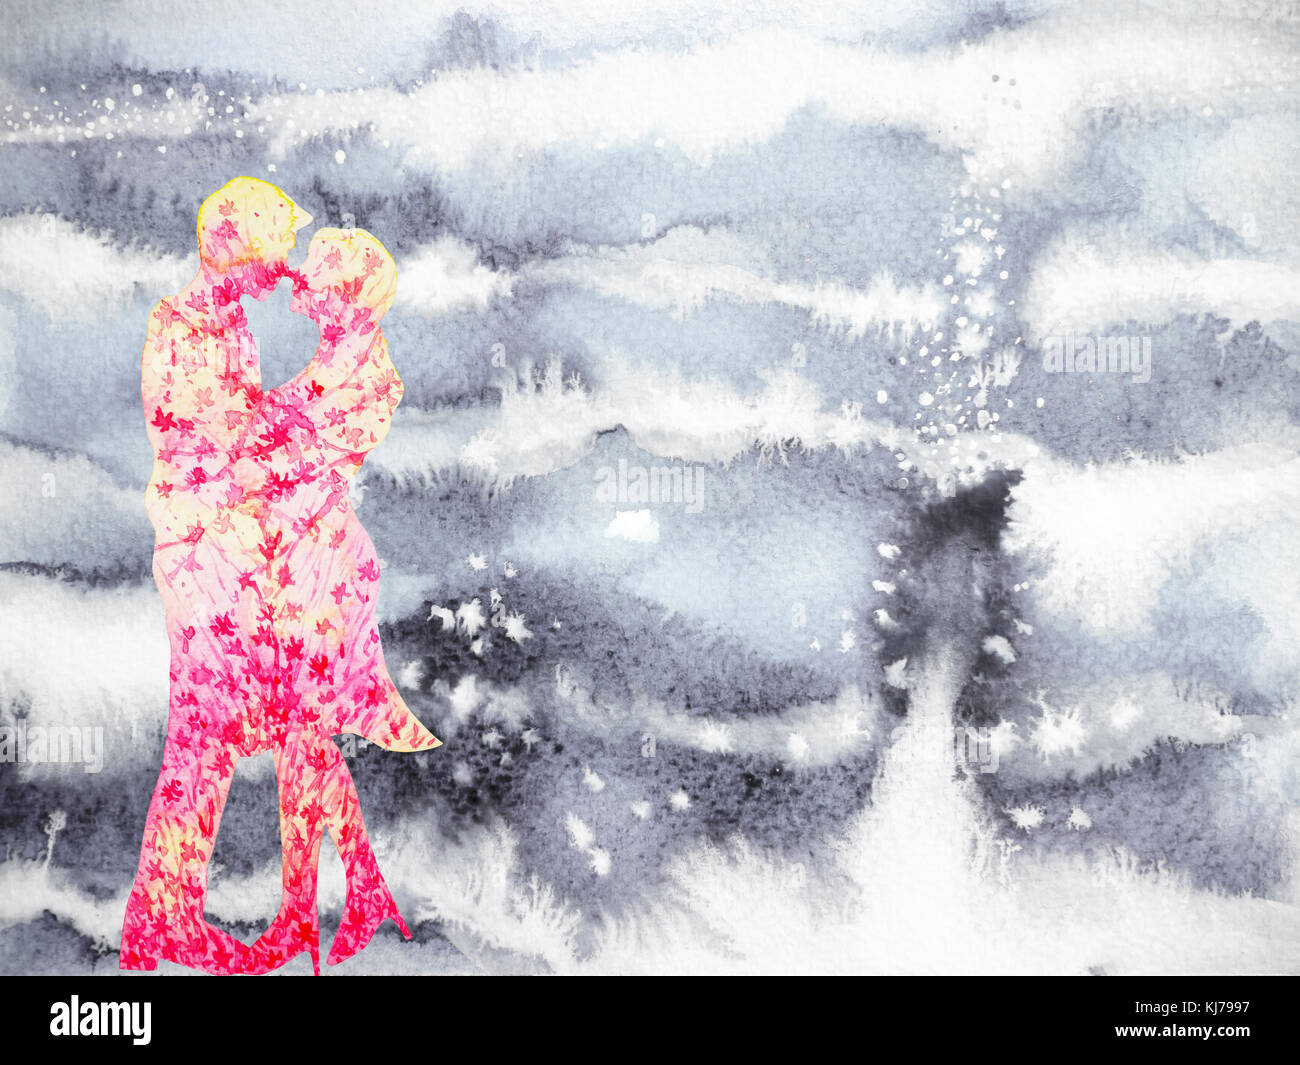 Los amantes de la pareja dulce amor en invierno pintura acuarela dibujada a mano Foto de stock